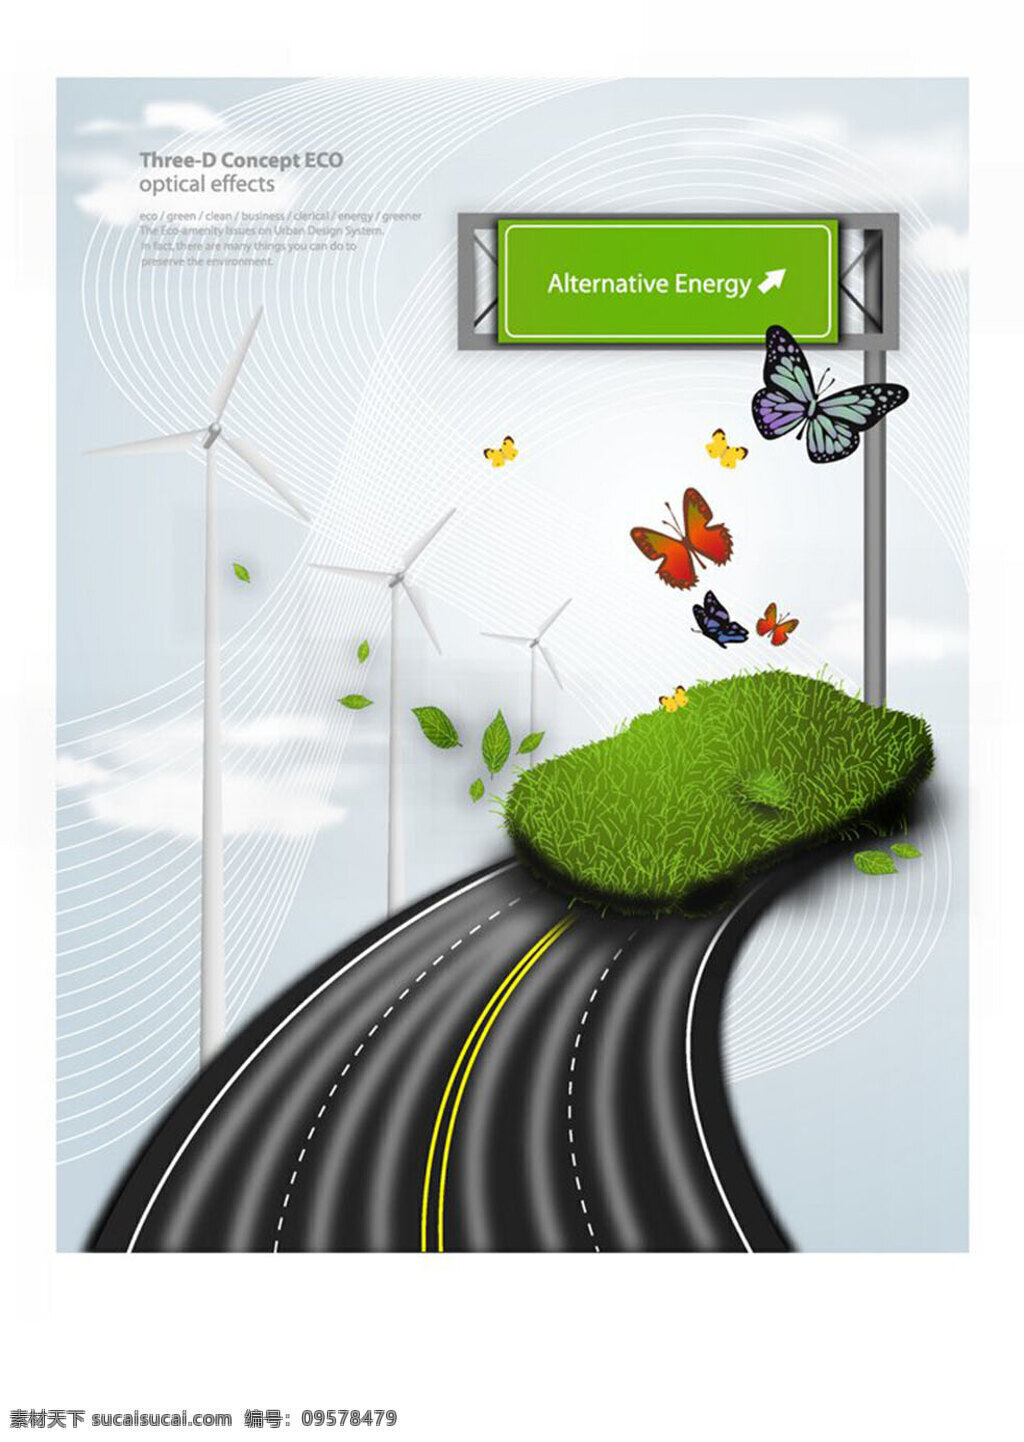 节能环保 模板下载 环境保护 能源保护 绿色环保 环保宣传海报 风车 空间环境 矢量素材